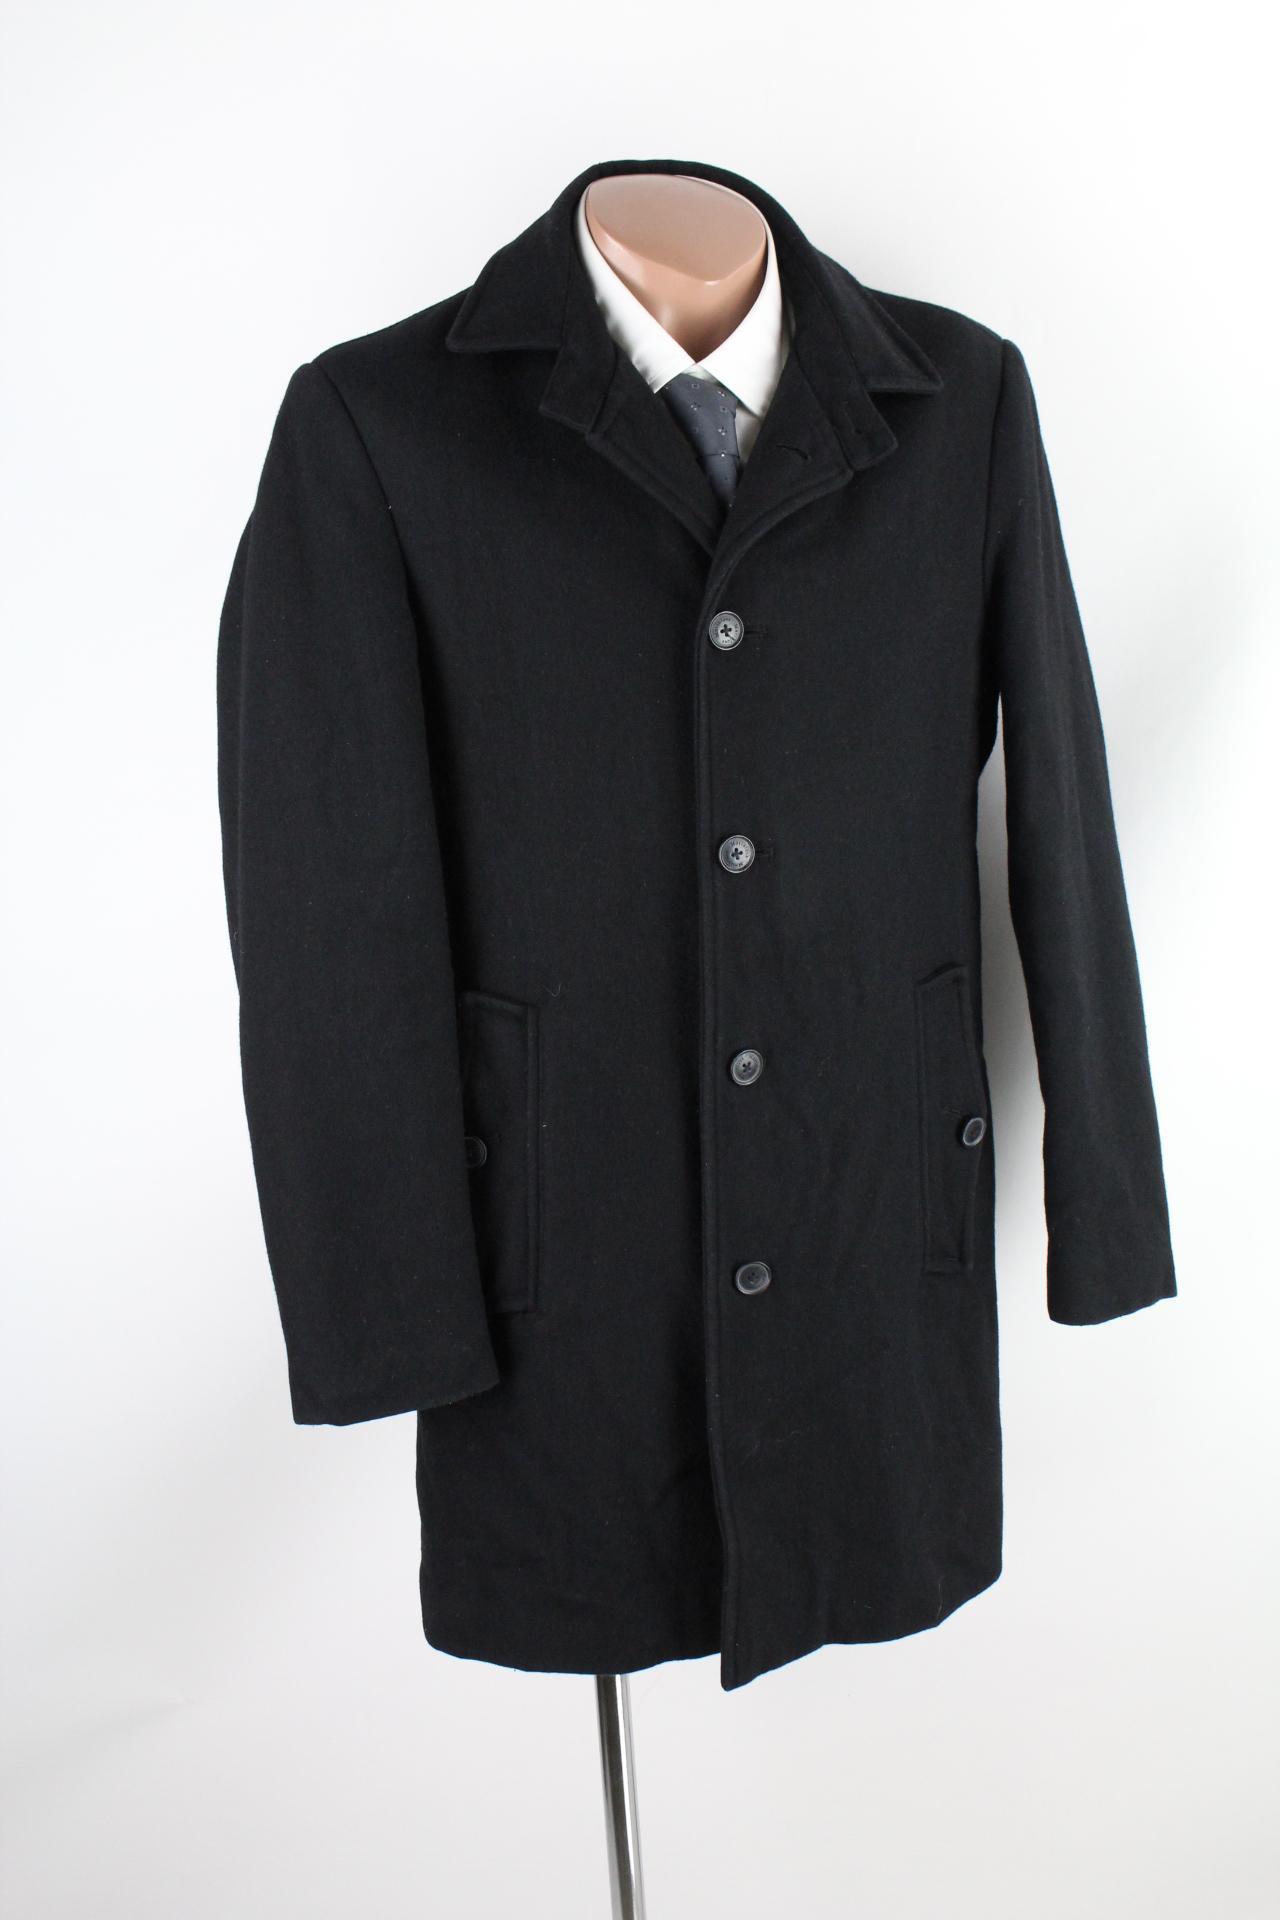 Matinique Herren-Mantel schwarz Größe S